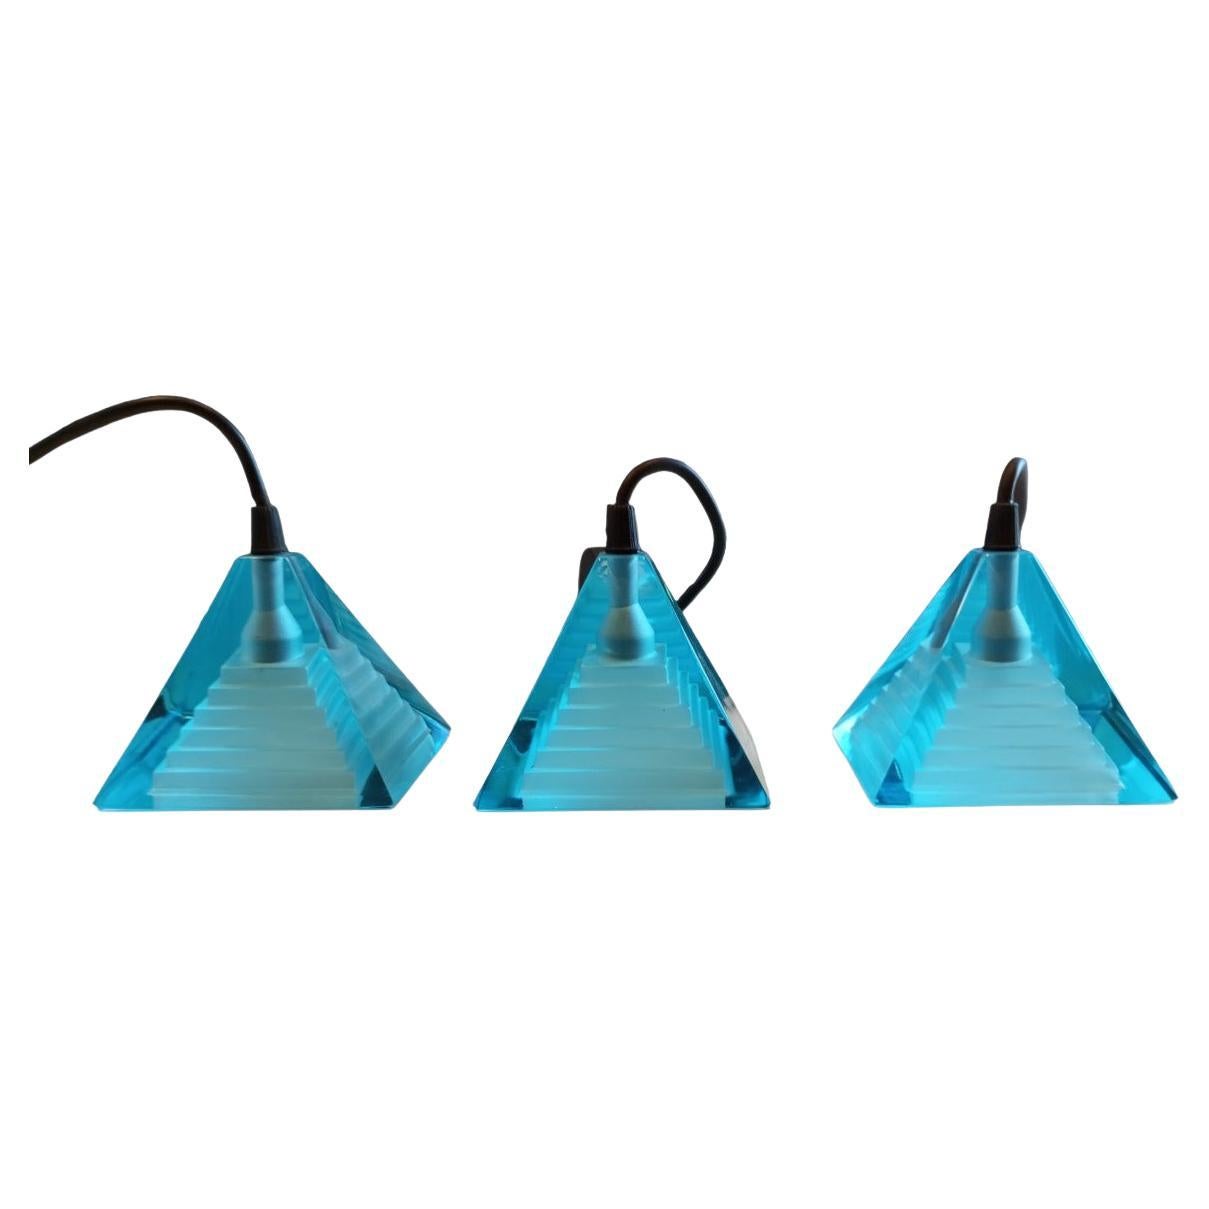 Trois lampes bleues Pyramid conçues par Paolo Piva pour Mazzega - verre de Murano